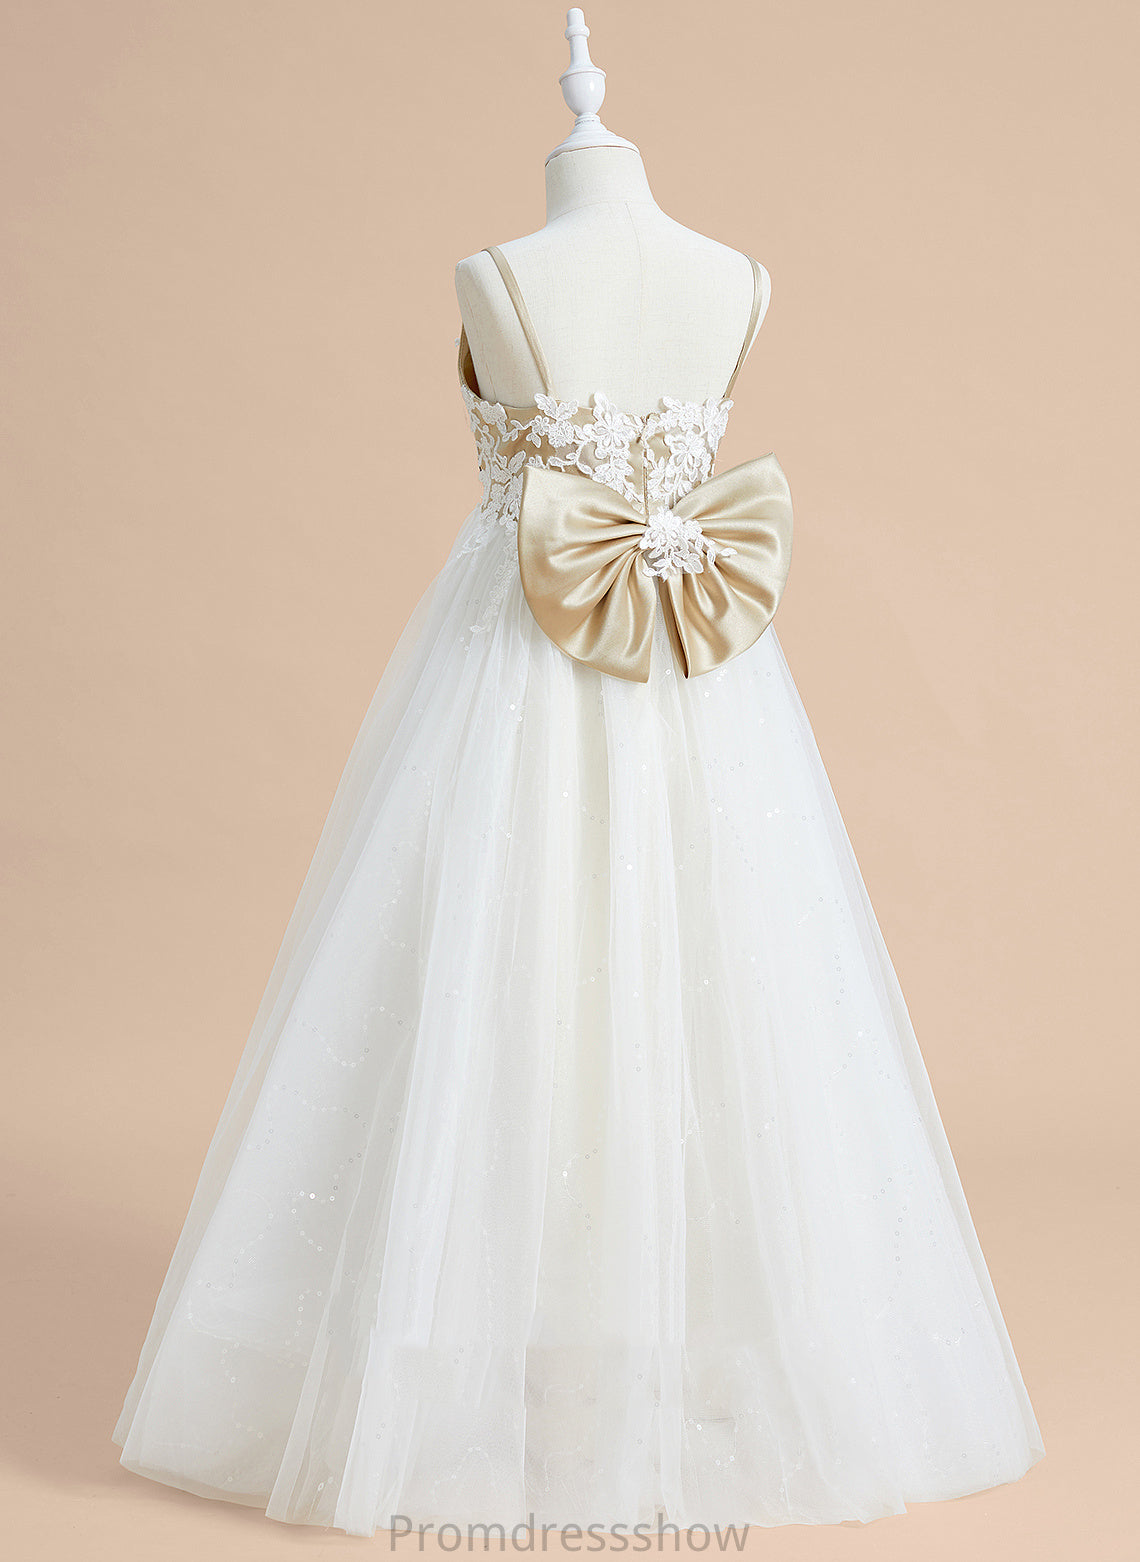 Sleeveless Lace/Bow(s) - Girl V-neck With Flower Girl Dresses Floor-length Dress Satin/Tulle Flower Ball-Gown/Princess Kirsten